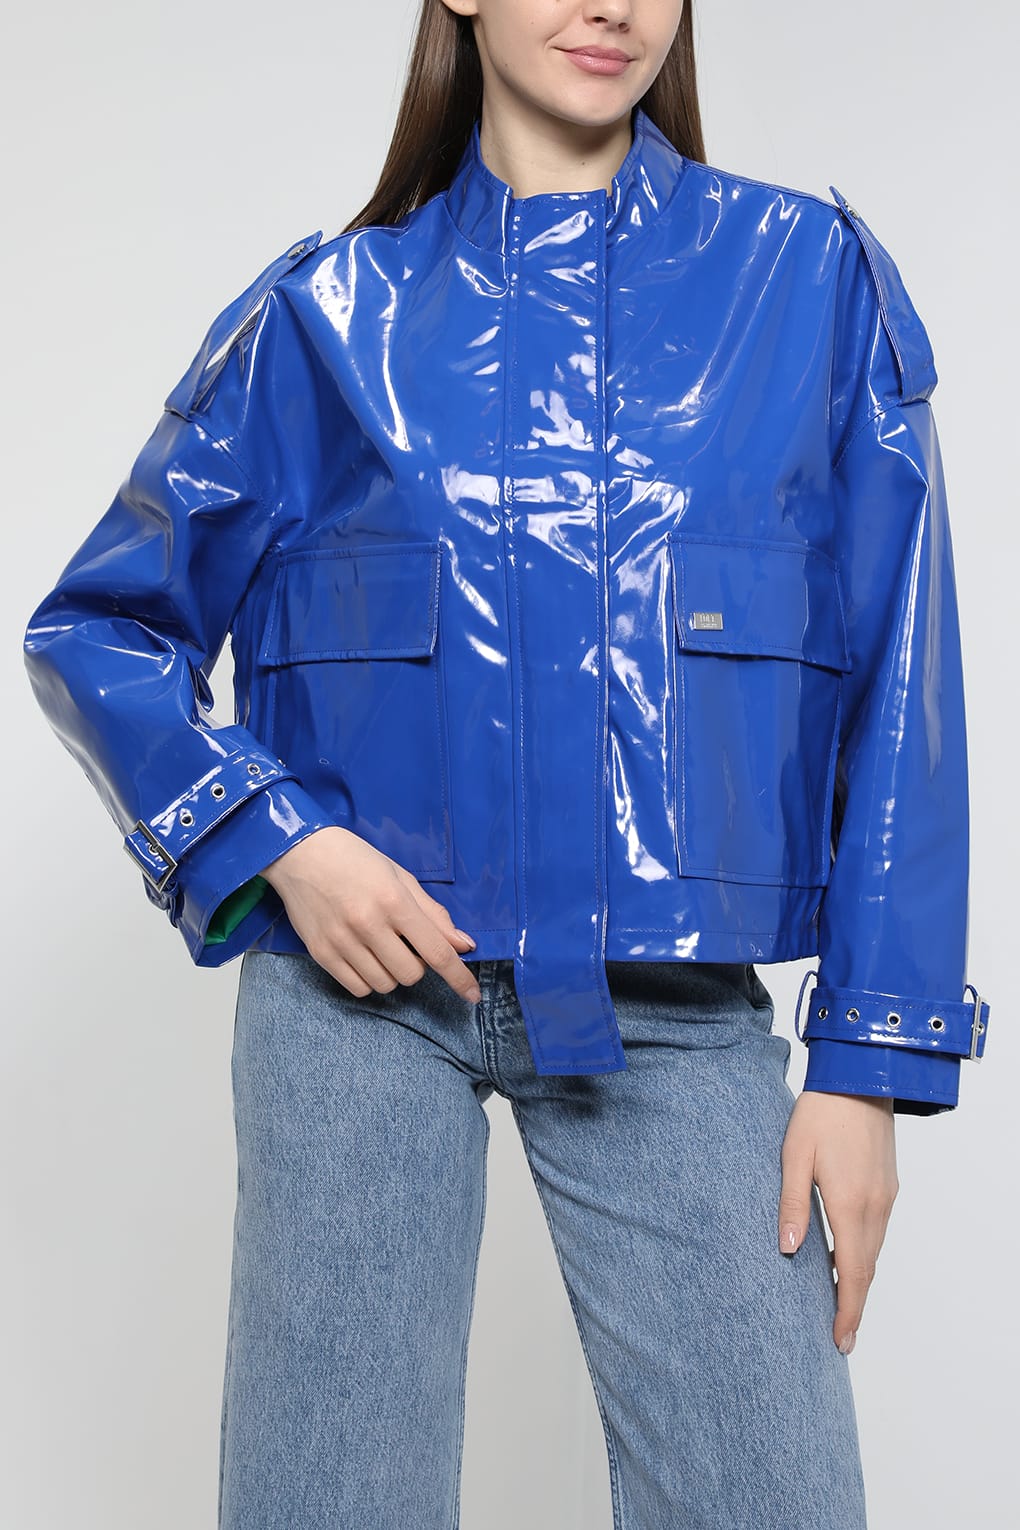 Кожаная куртка женская Loft LF2032892 синяя L